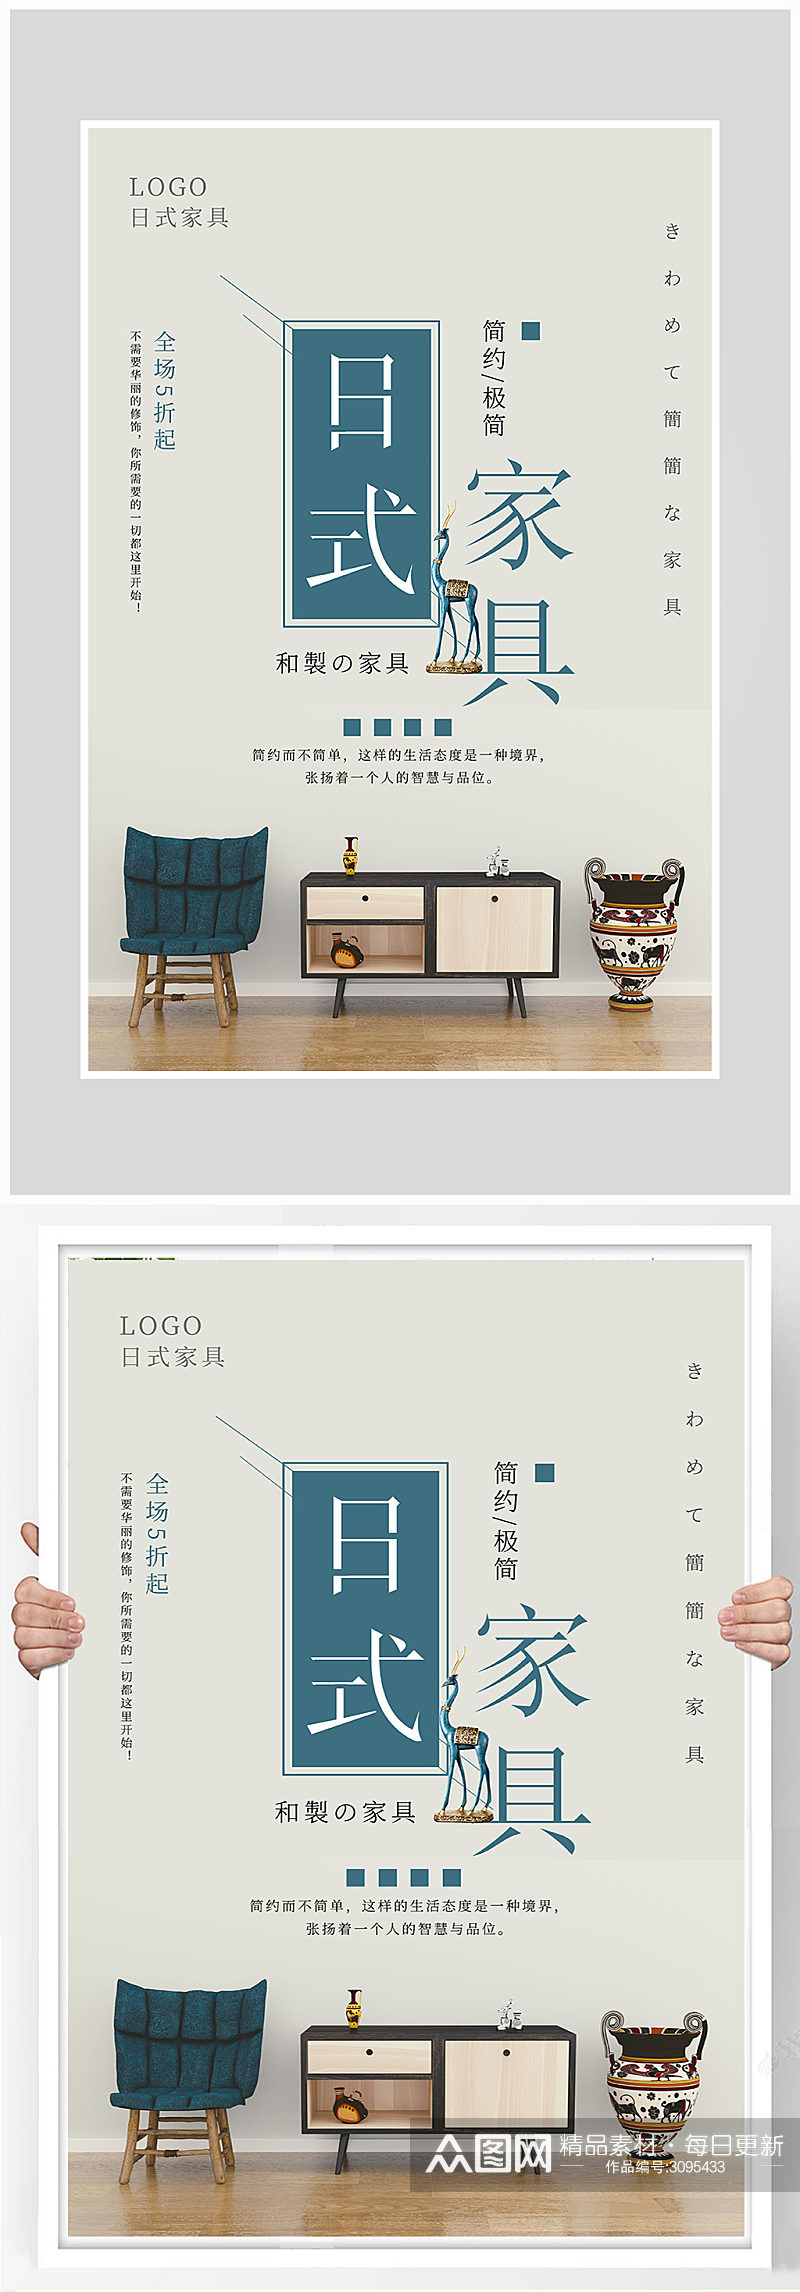 简约日式风格家具海报设计素材